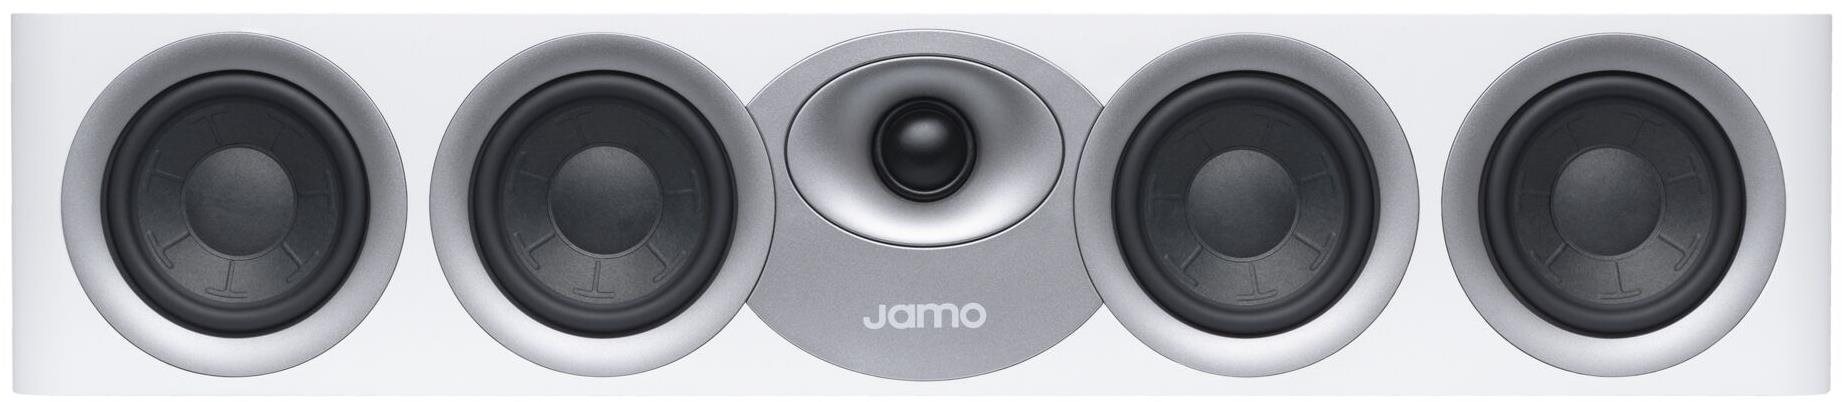 JAMO S7-43C világos szürkésfehér